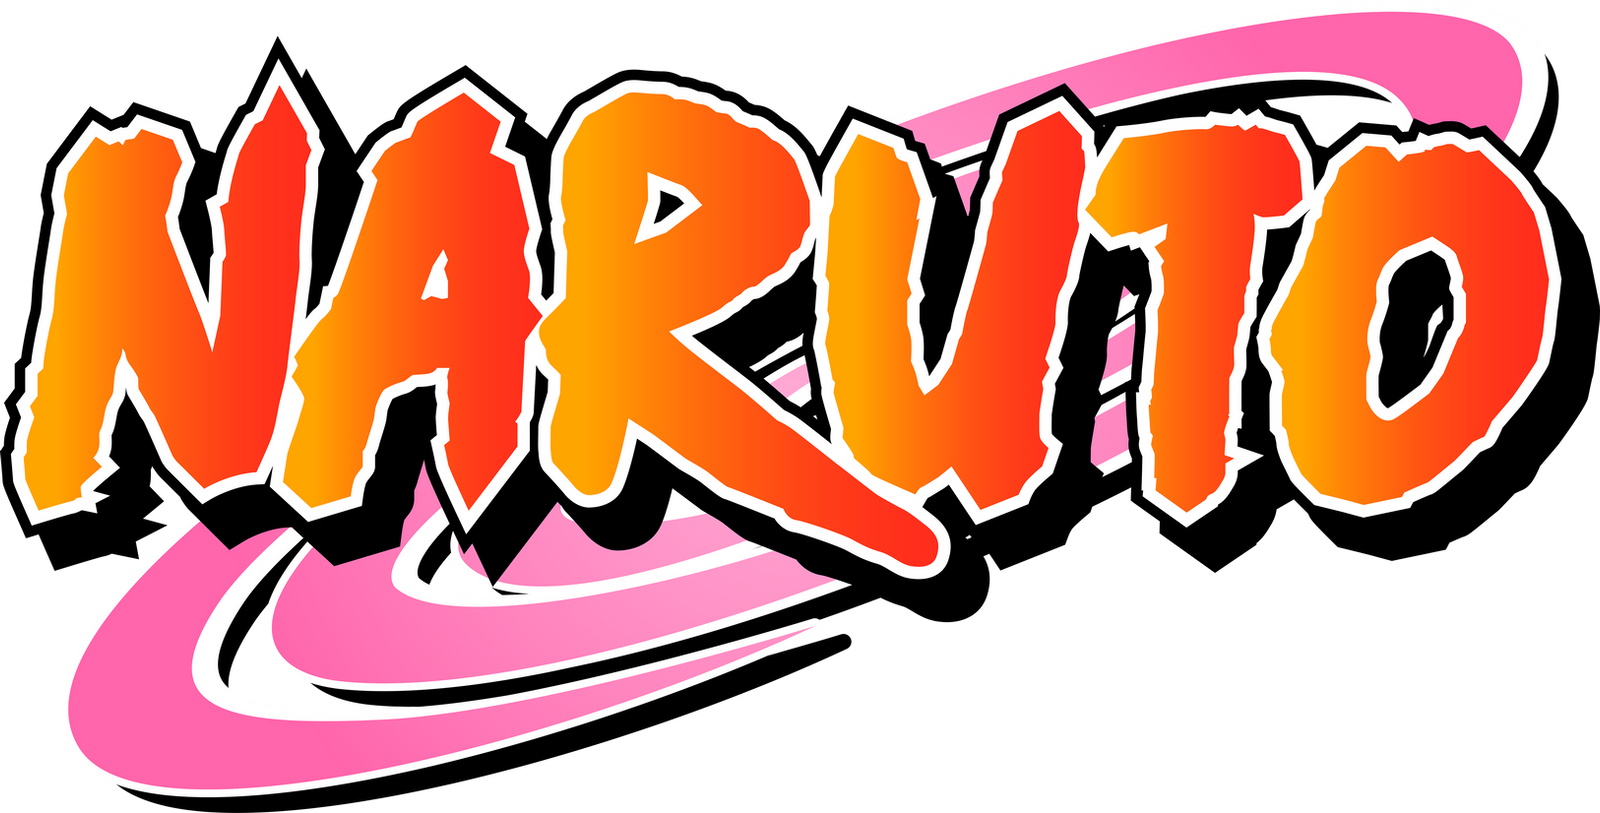 Logo - Naruto - By ShikoMT by ShikoMT on DeviantArt